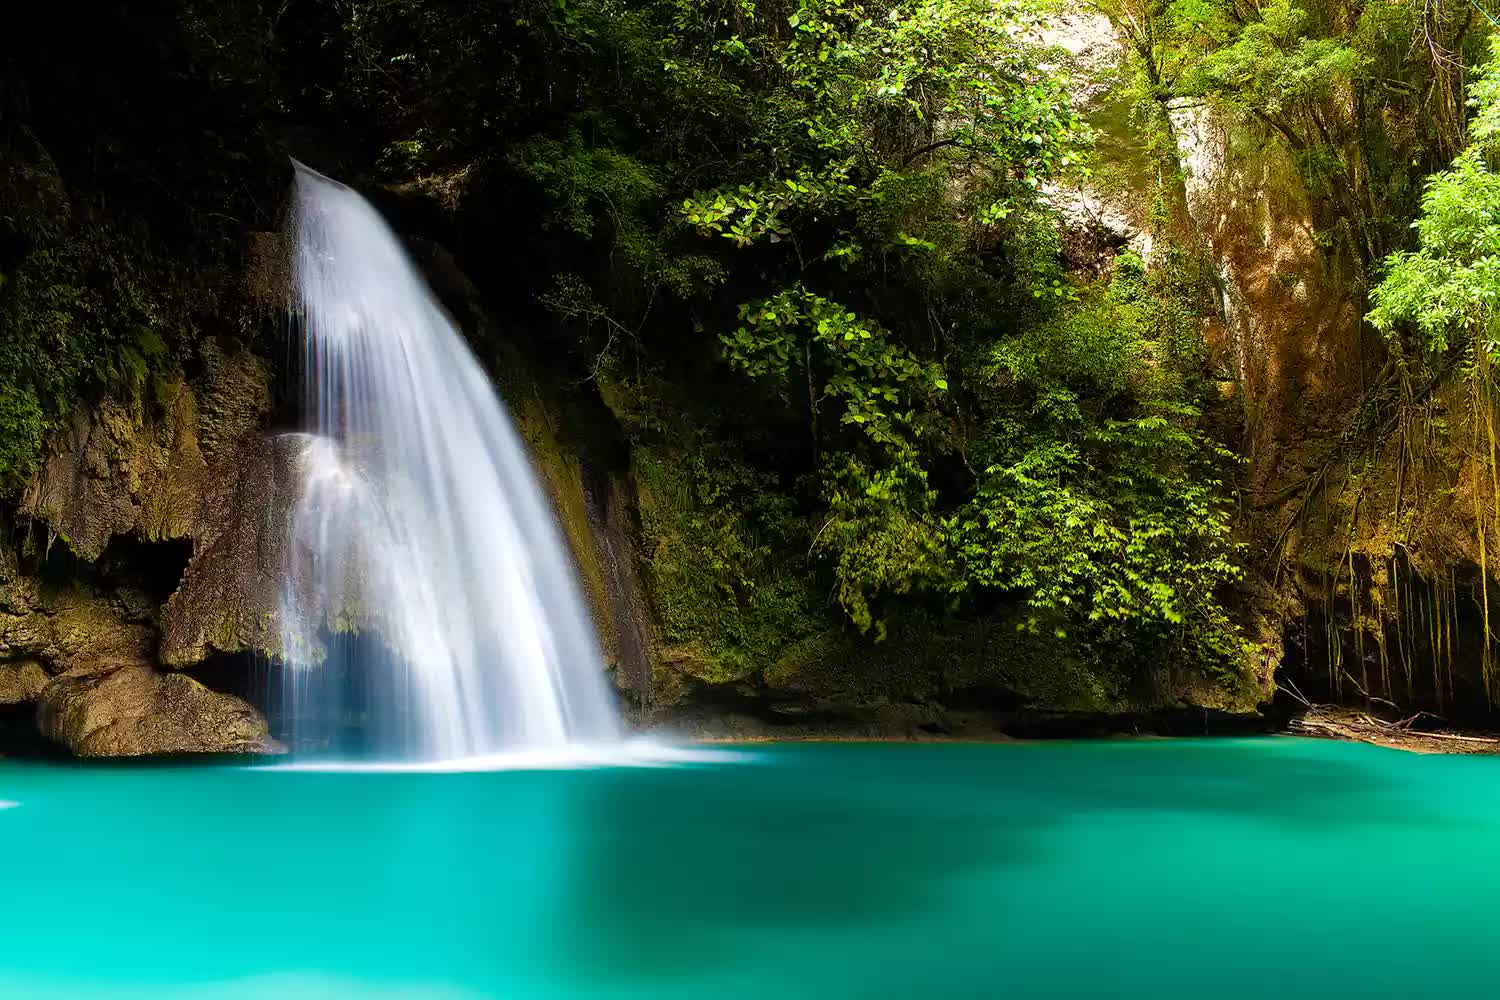 Chiêm ngưỡng 21 thác nước đẹp nhất thế giới: Việt Nam có tên, là thác nắm kỷ lục Đông Nam Á - Ảnh 14.